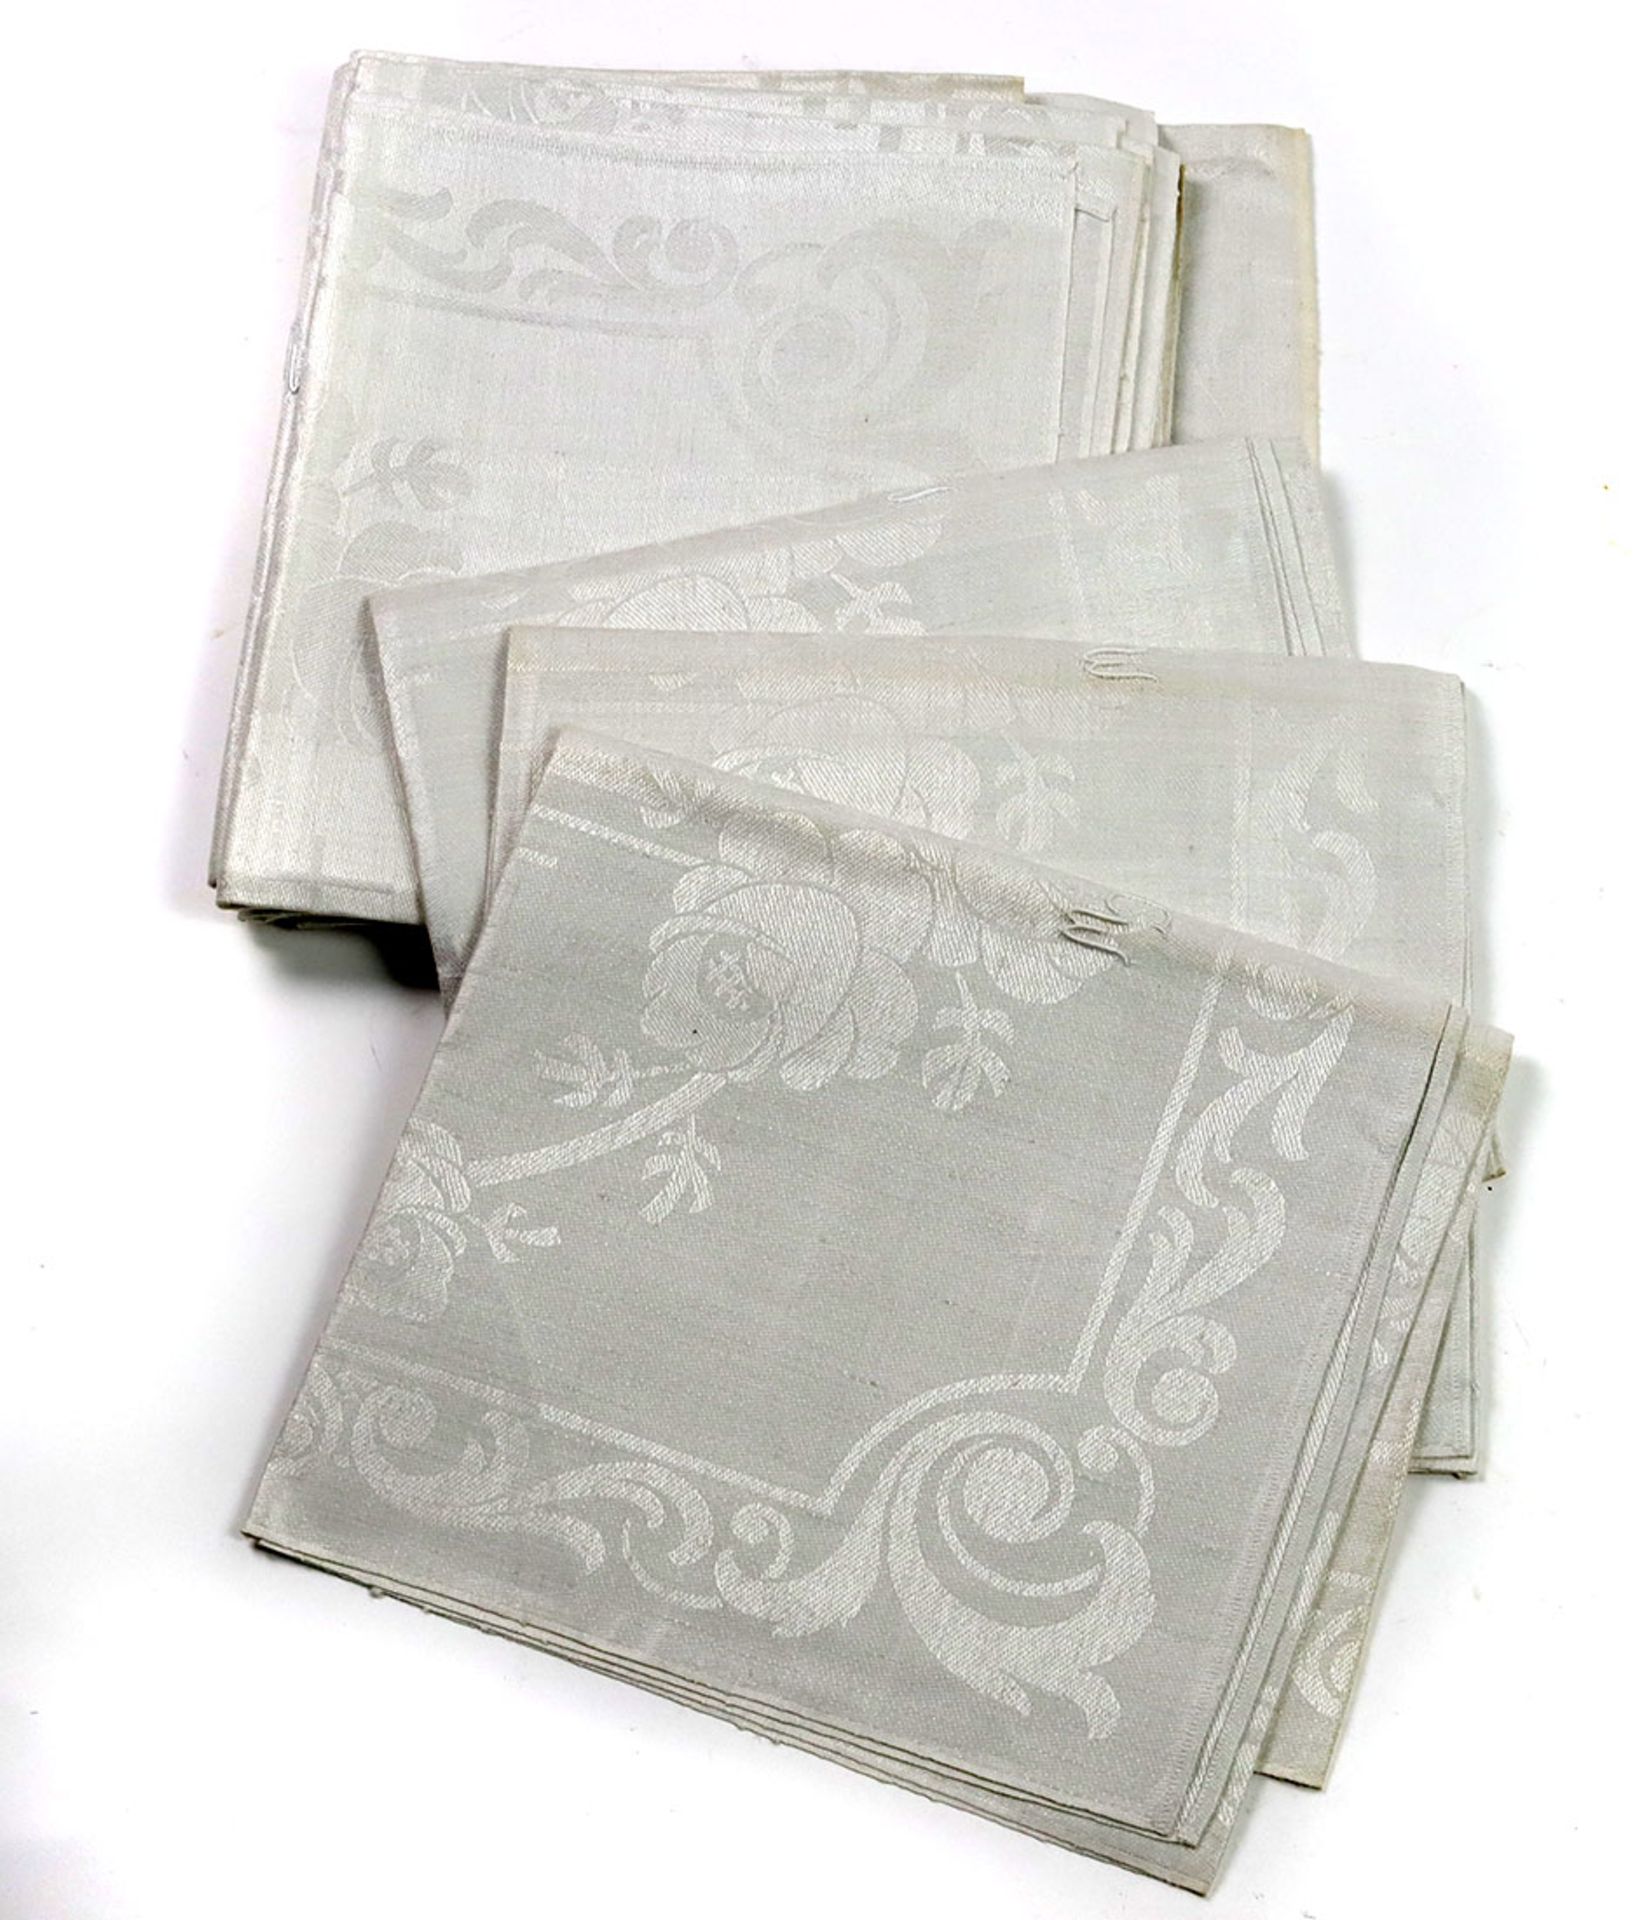 Satz Leinen Handtücherhelles Leinen mit eingewebtem stilisiertem Rosenmustern, mittig große